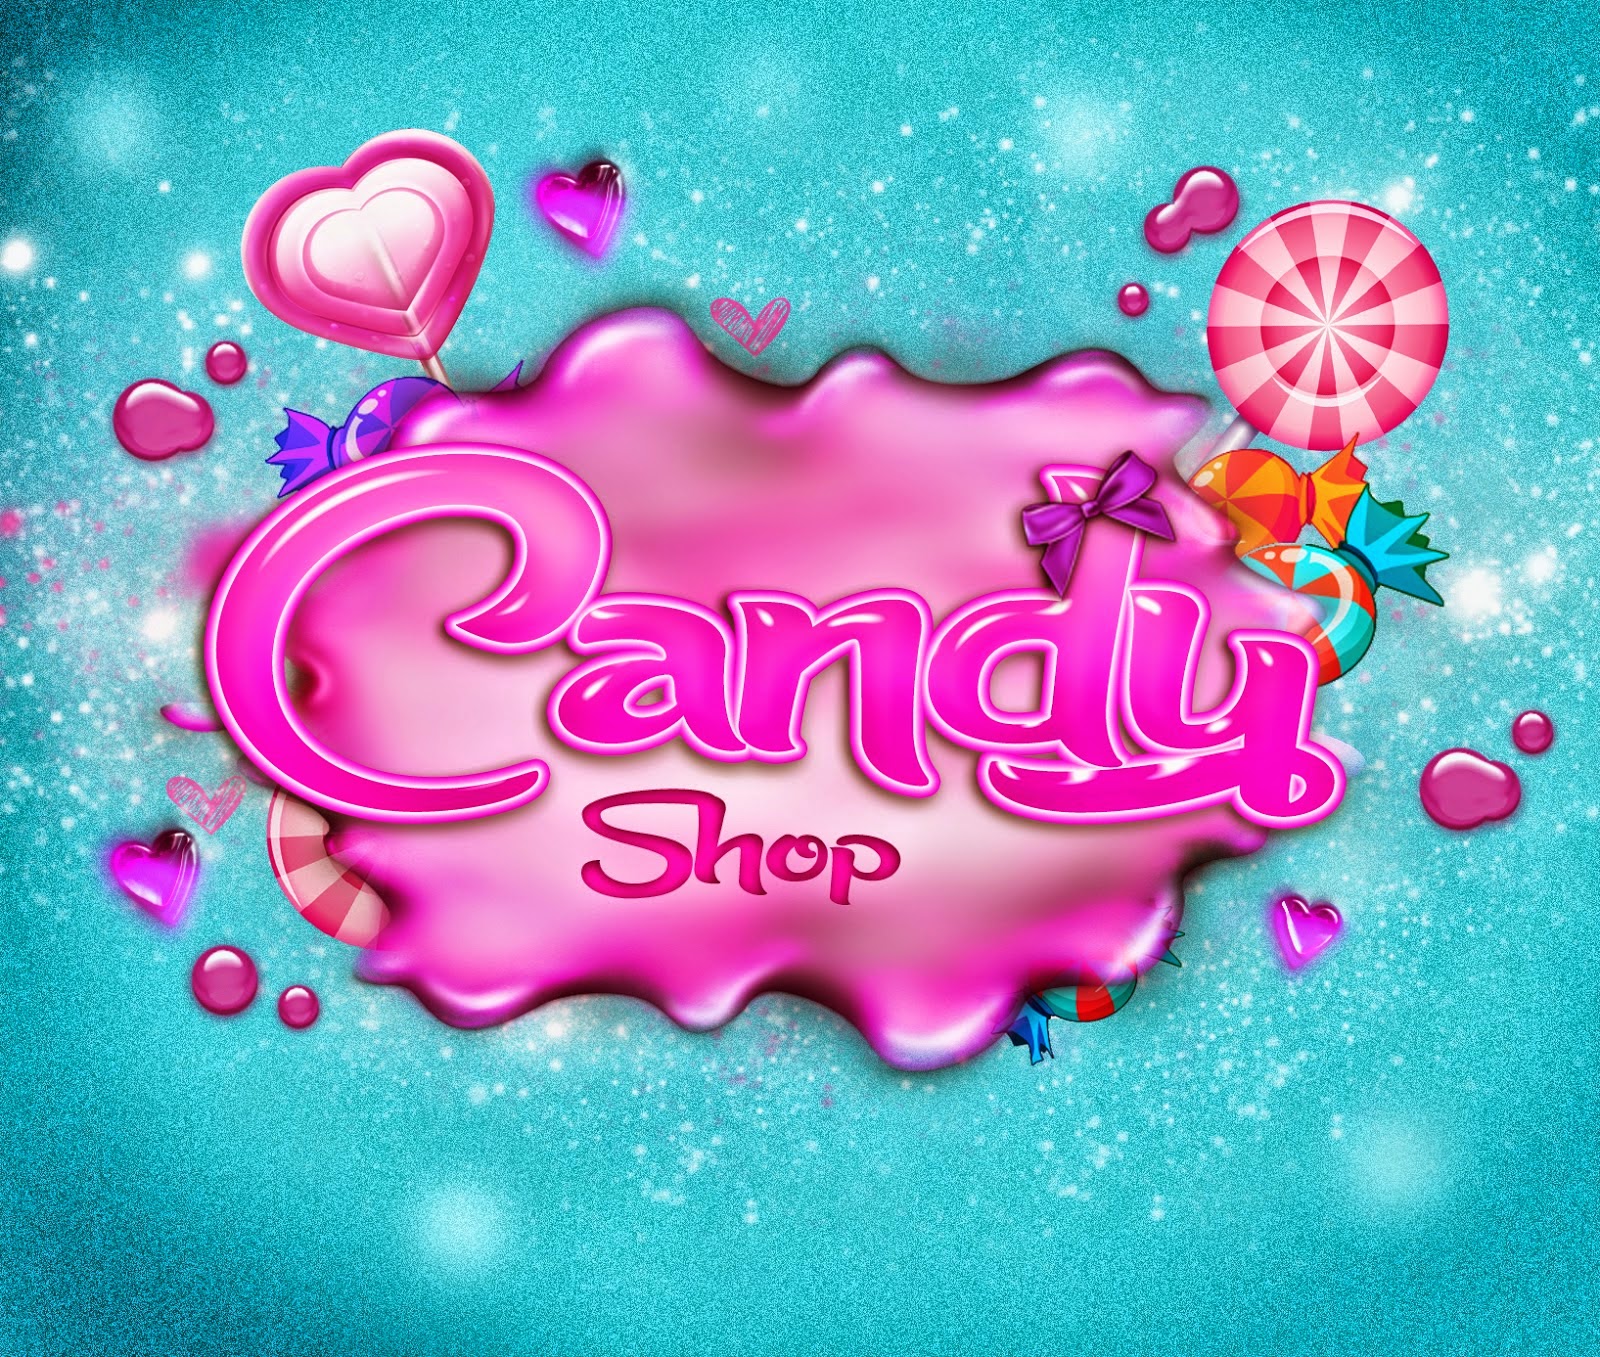 Candy candy shop 1. Candy shop картинки. Candy shop логотип. Candy shop надпись. Candy shop вывеска.